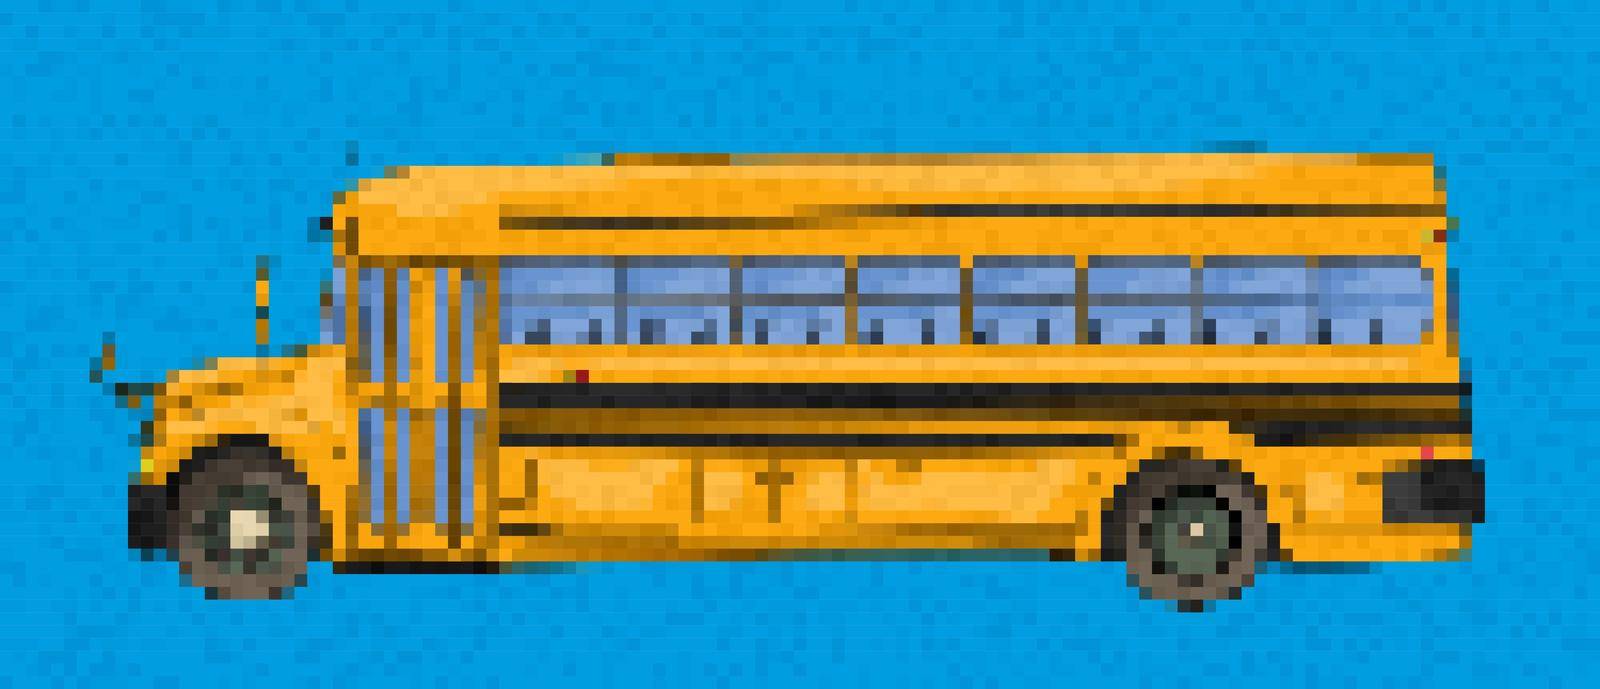 Pixel art school bus by Lirch